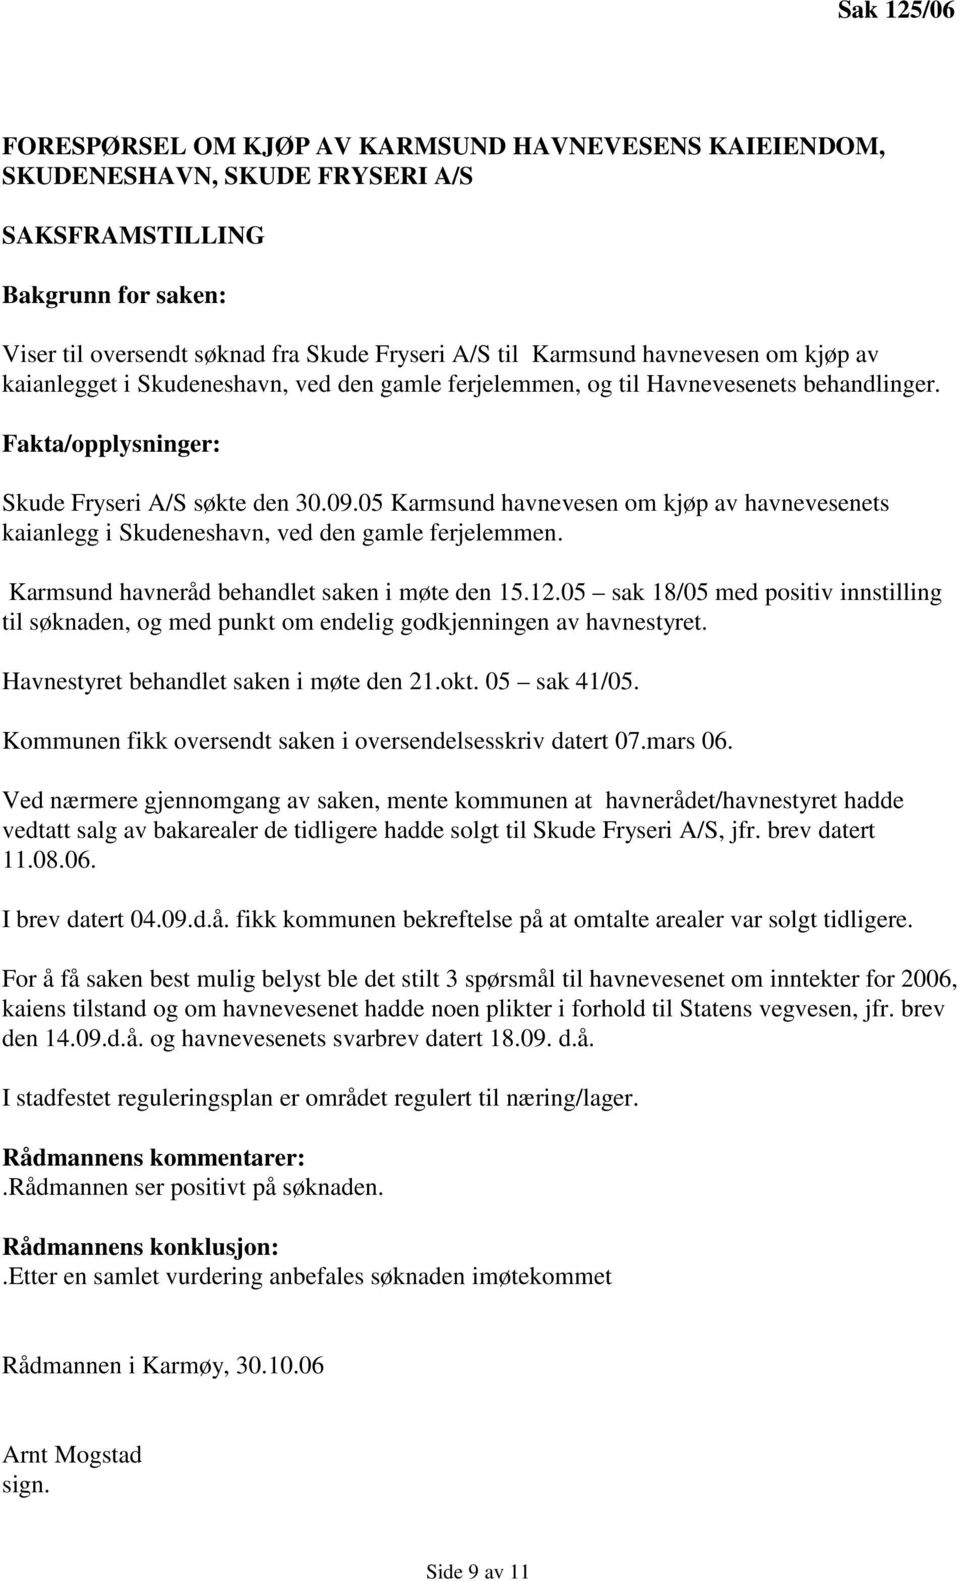 05 Karmsund havnevesen om kjøp av havnevesenets kaianlegg i Skudeneshavn, ved den gamle ferjelemmen. Karmsund havneråd behandlet saken i møte den 15.12.